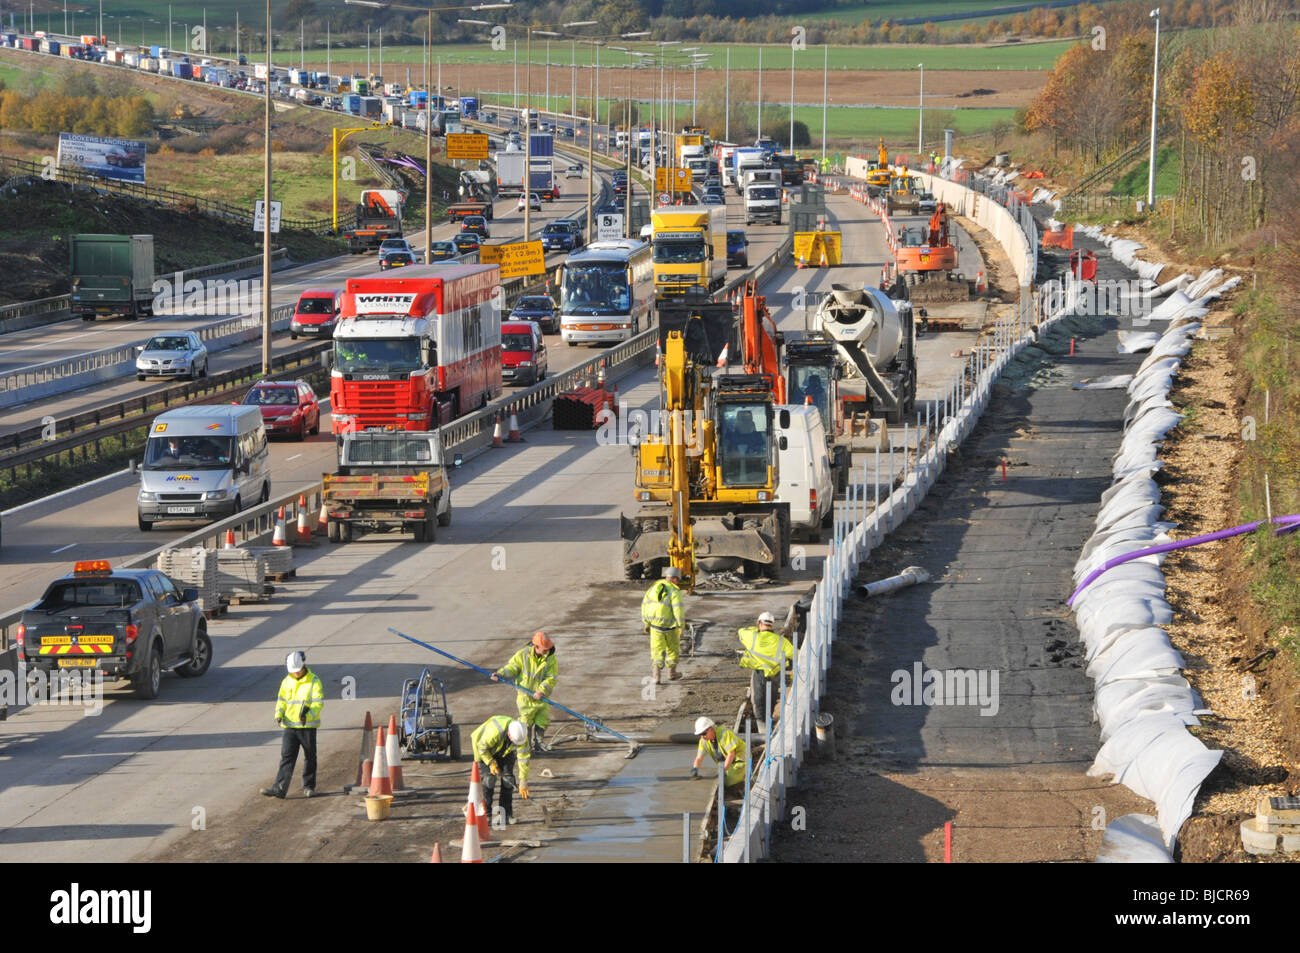 Autoroute M25 embouteillage de la circulation à contre-courant de l'autoroute retour parmi les ouvriers de la construction élargissant la route à quatre voies dans le paysage rural de l'Essex Angleterre Banque D'Images